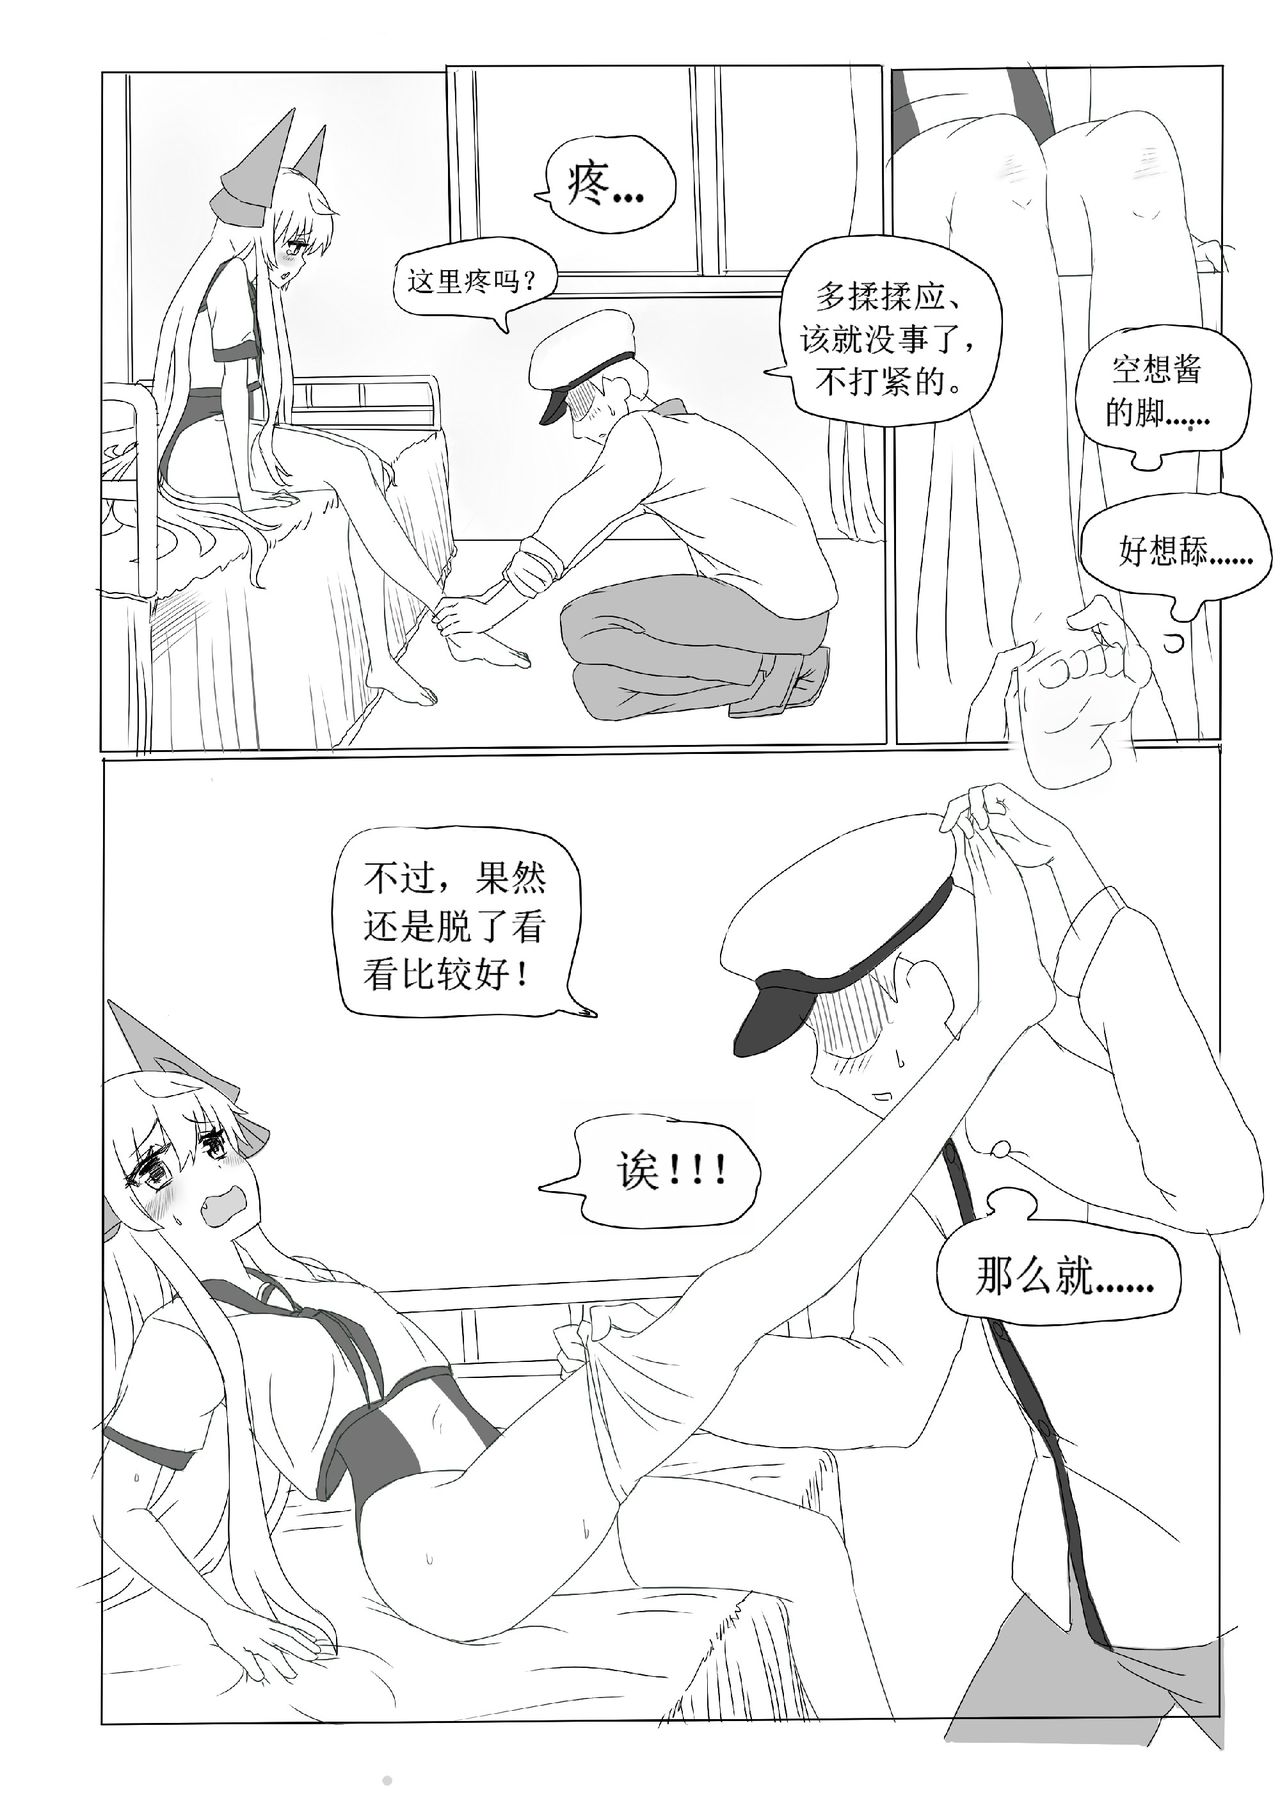 [系啊系]一本正经的空想H本子(Warship Girls) [Chinese]